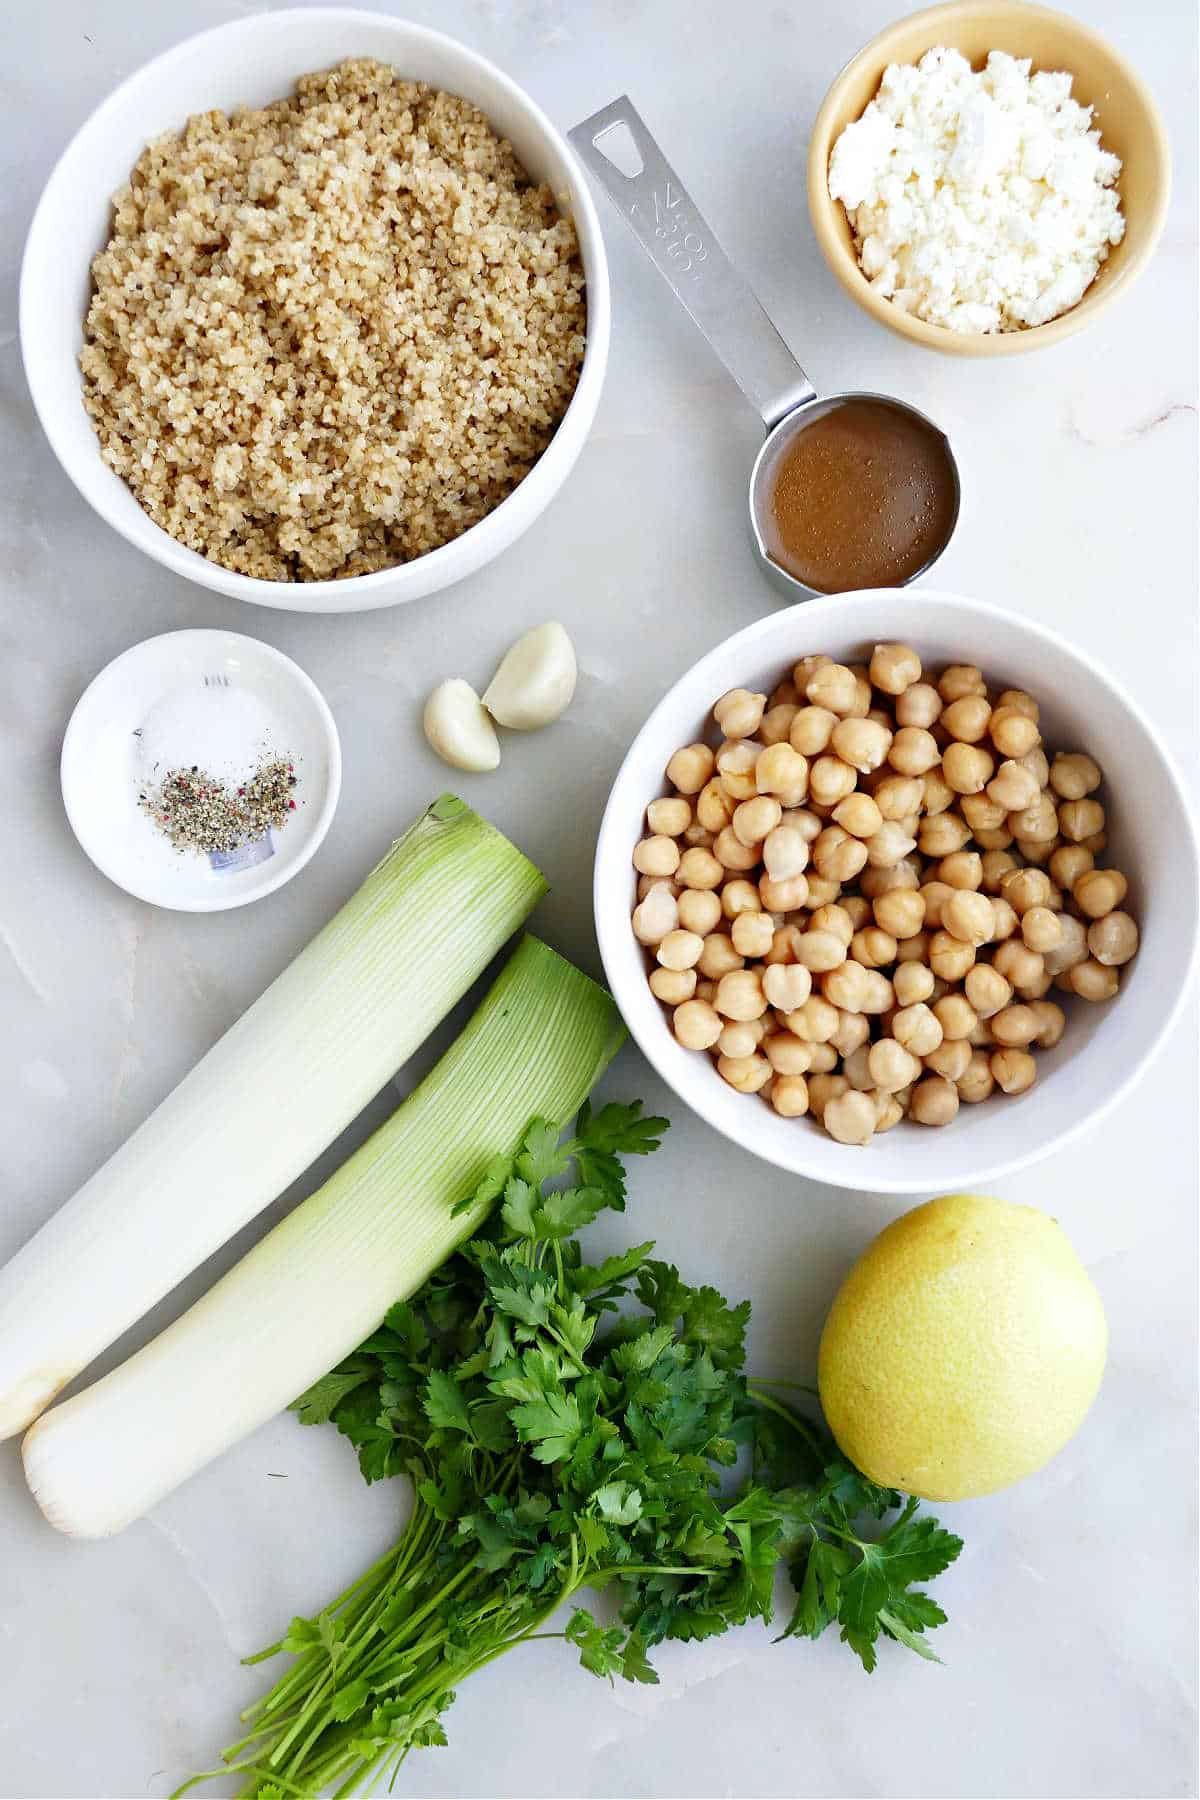 Ingredients needed to make leek salad.